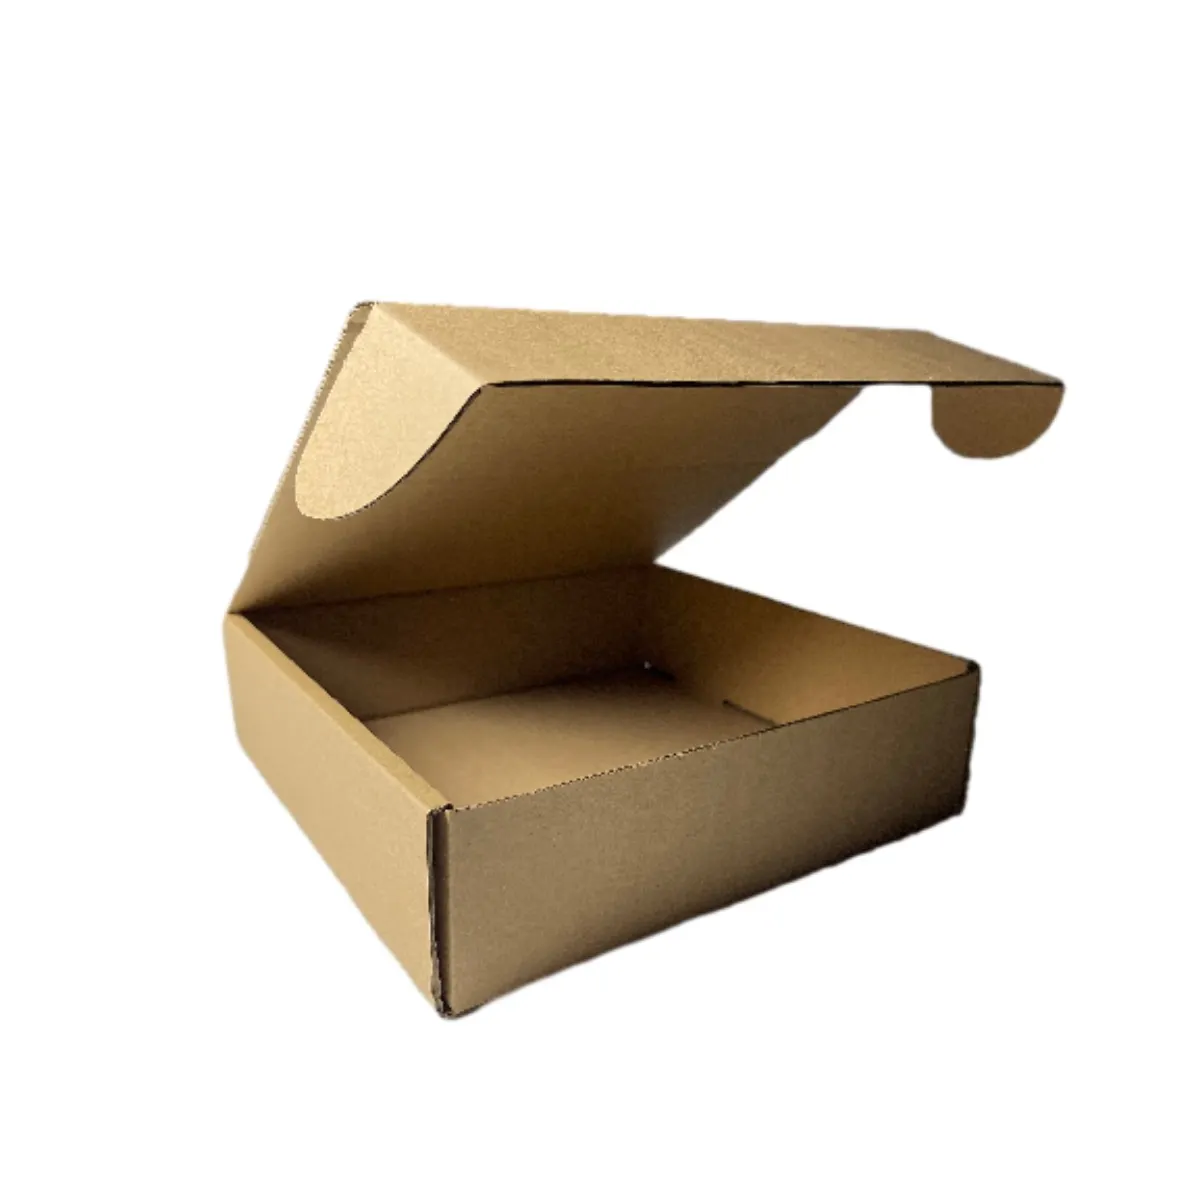 Fabrikherstellung kundenspezifisches design schwarze handwerkspapier-faltschachteln aus wellpappe verpackung versand versandboxen mit individuellem logo